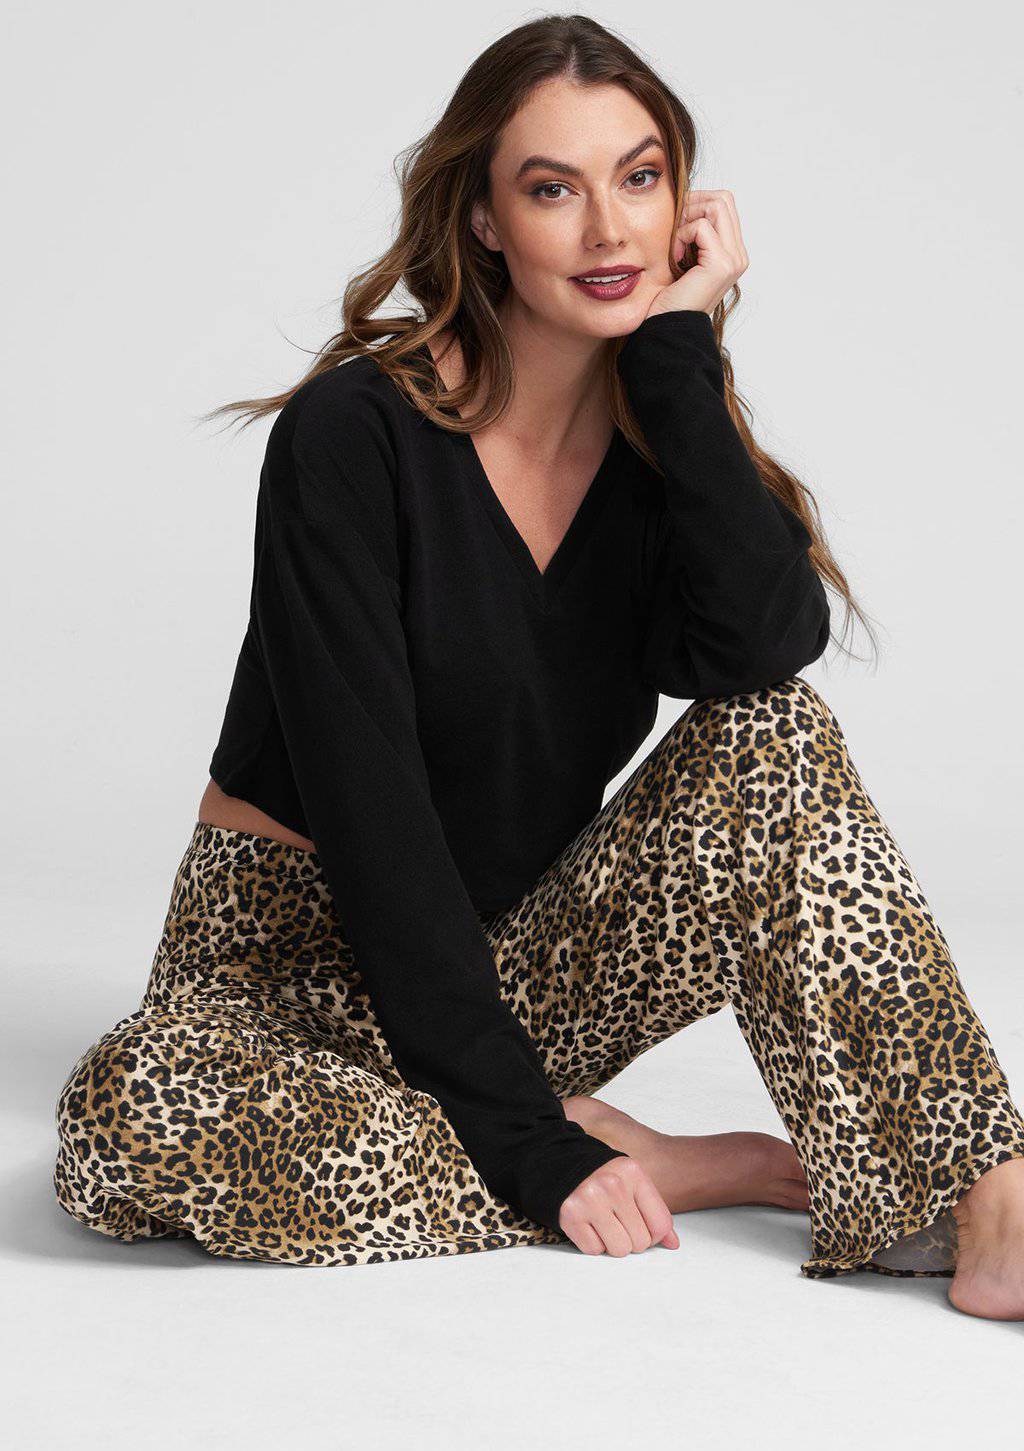 Alloy Apparel Tall Lounge Sleepwear Pants for Women in Leopard Size 2XL length 37 | Cotton